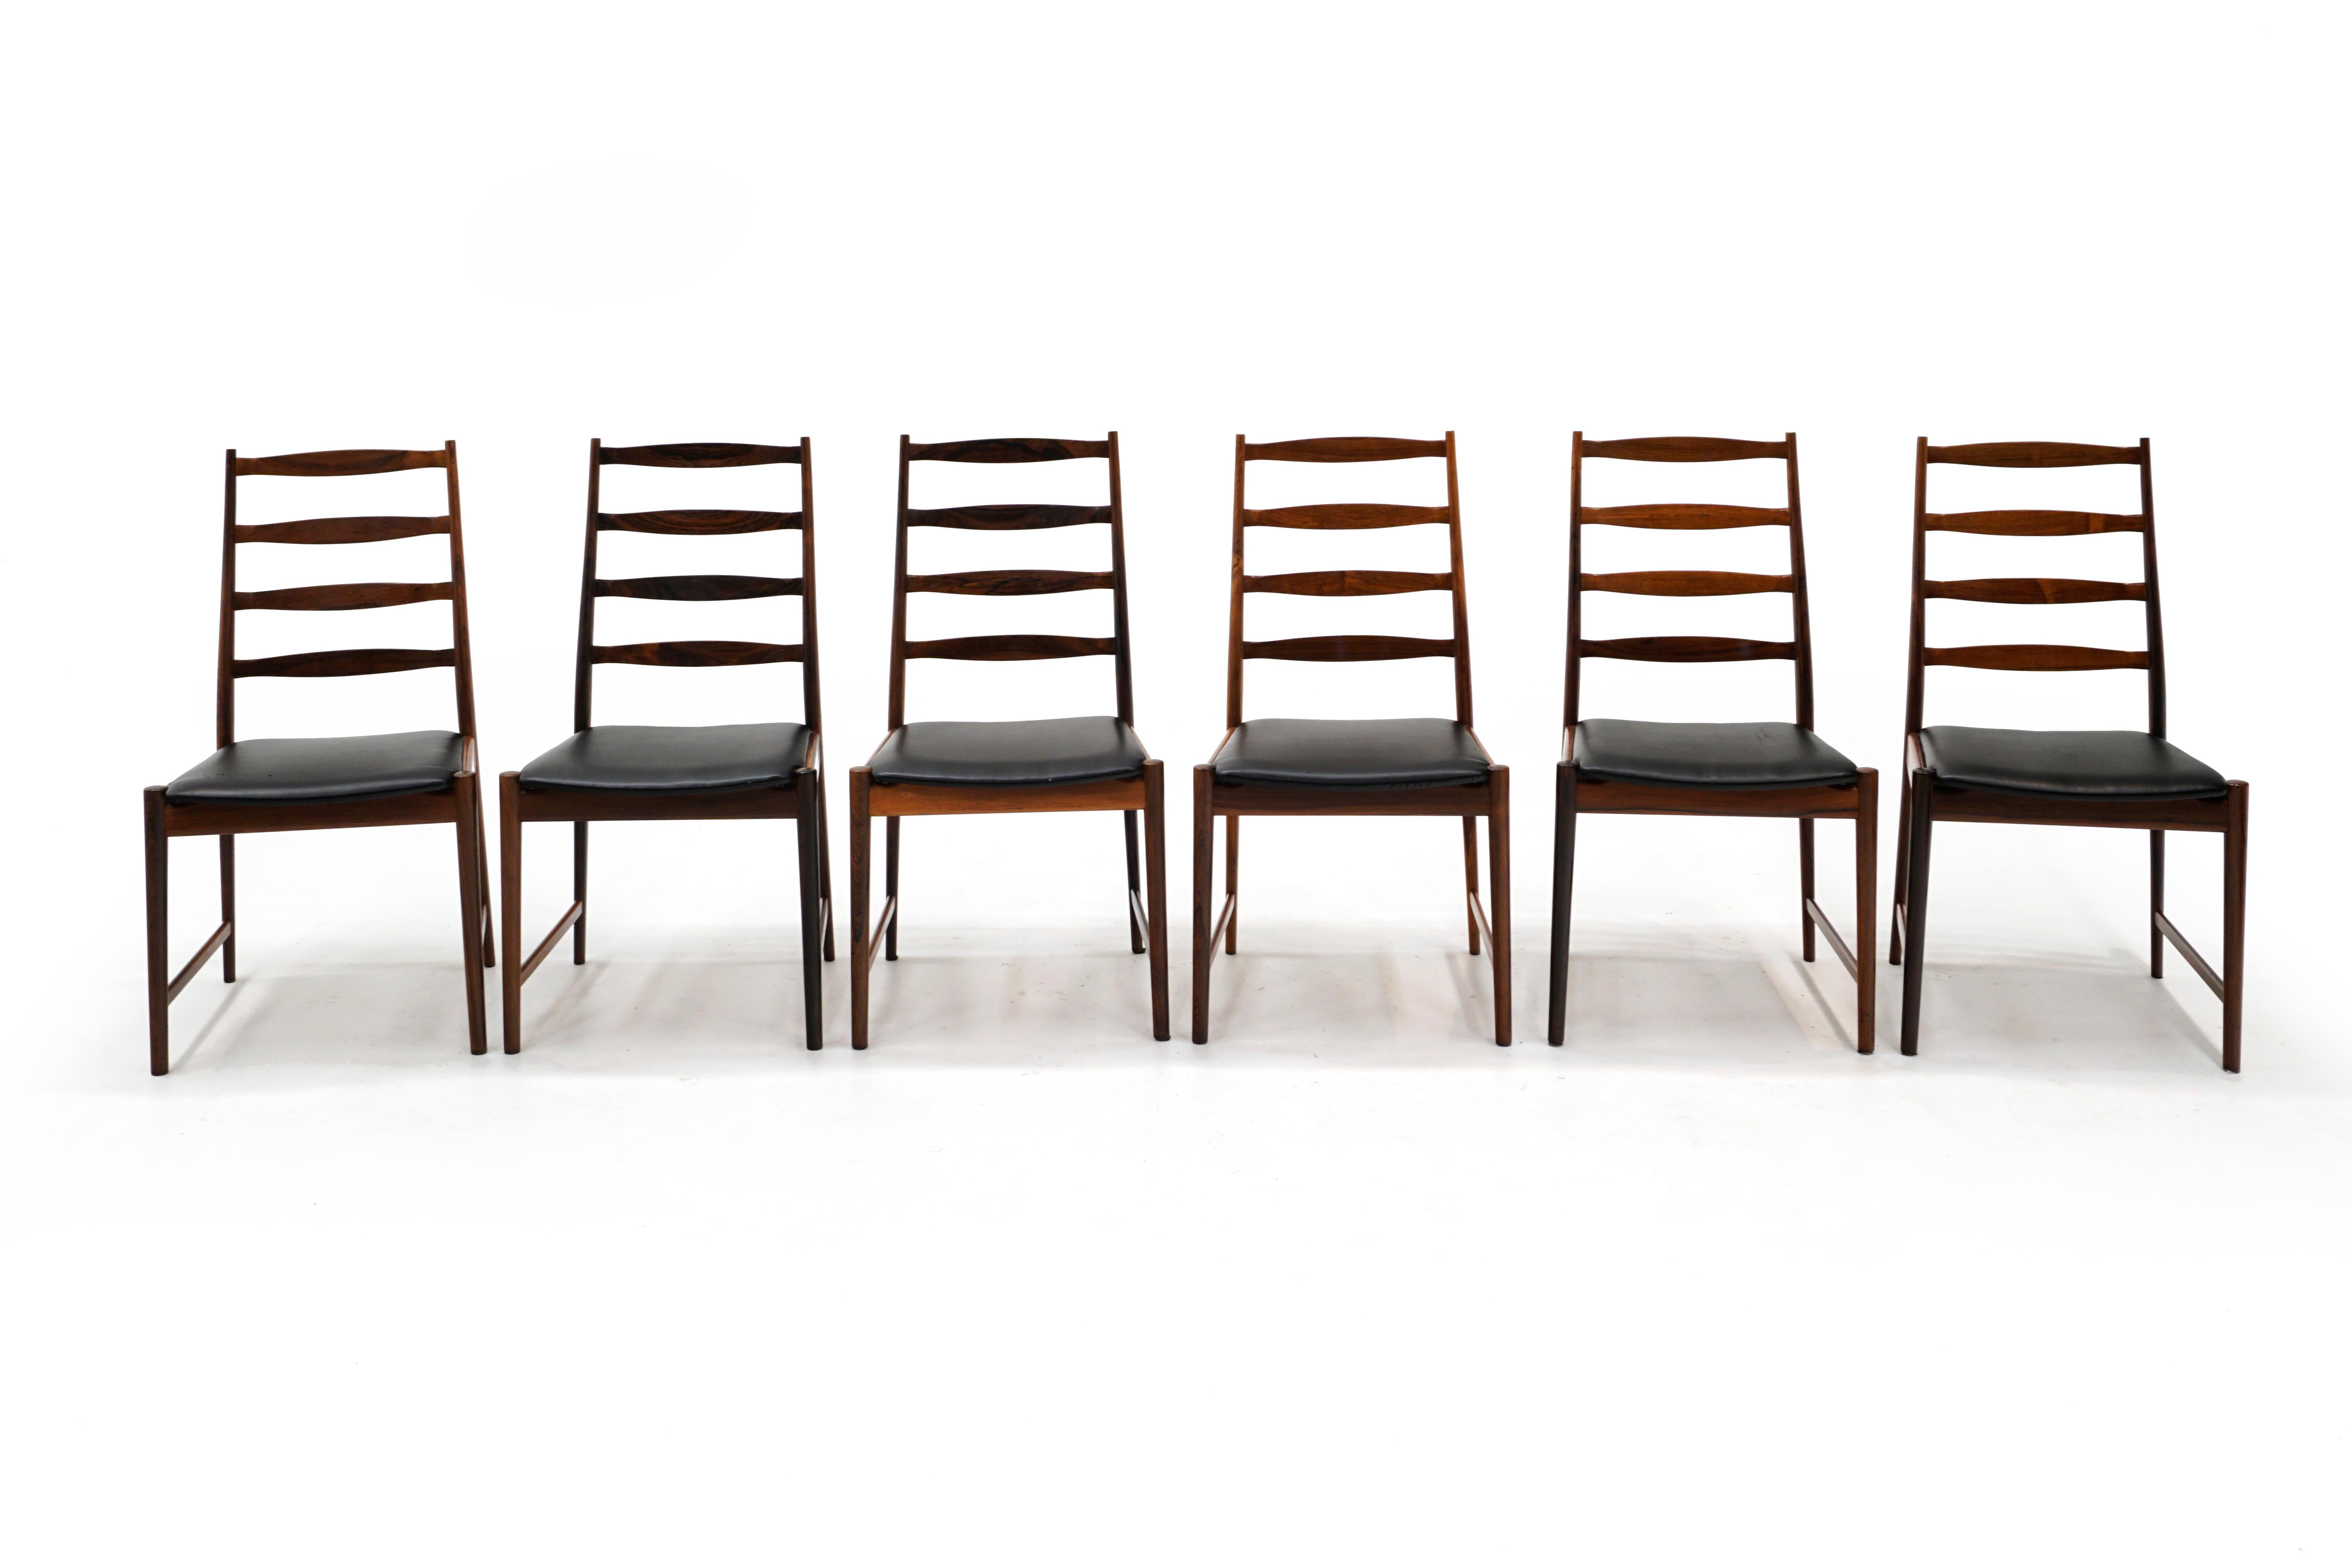 Ensemble de 6 superbes chaises de salle à manger en bois de rose sans accoudoirs, conçues par Arne Vodder et fabriquées par Vamo Sonderborg, Danemark, années 1960. Signé avec une marque sur le dessous des chaises. Magnifique ensemble.